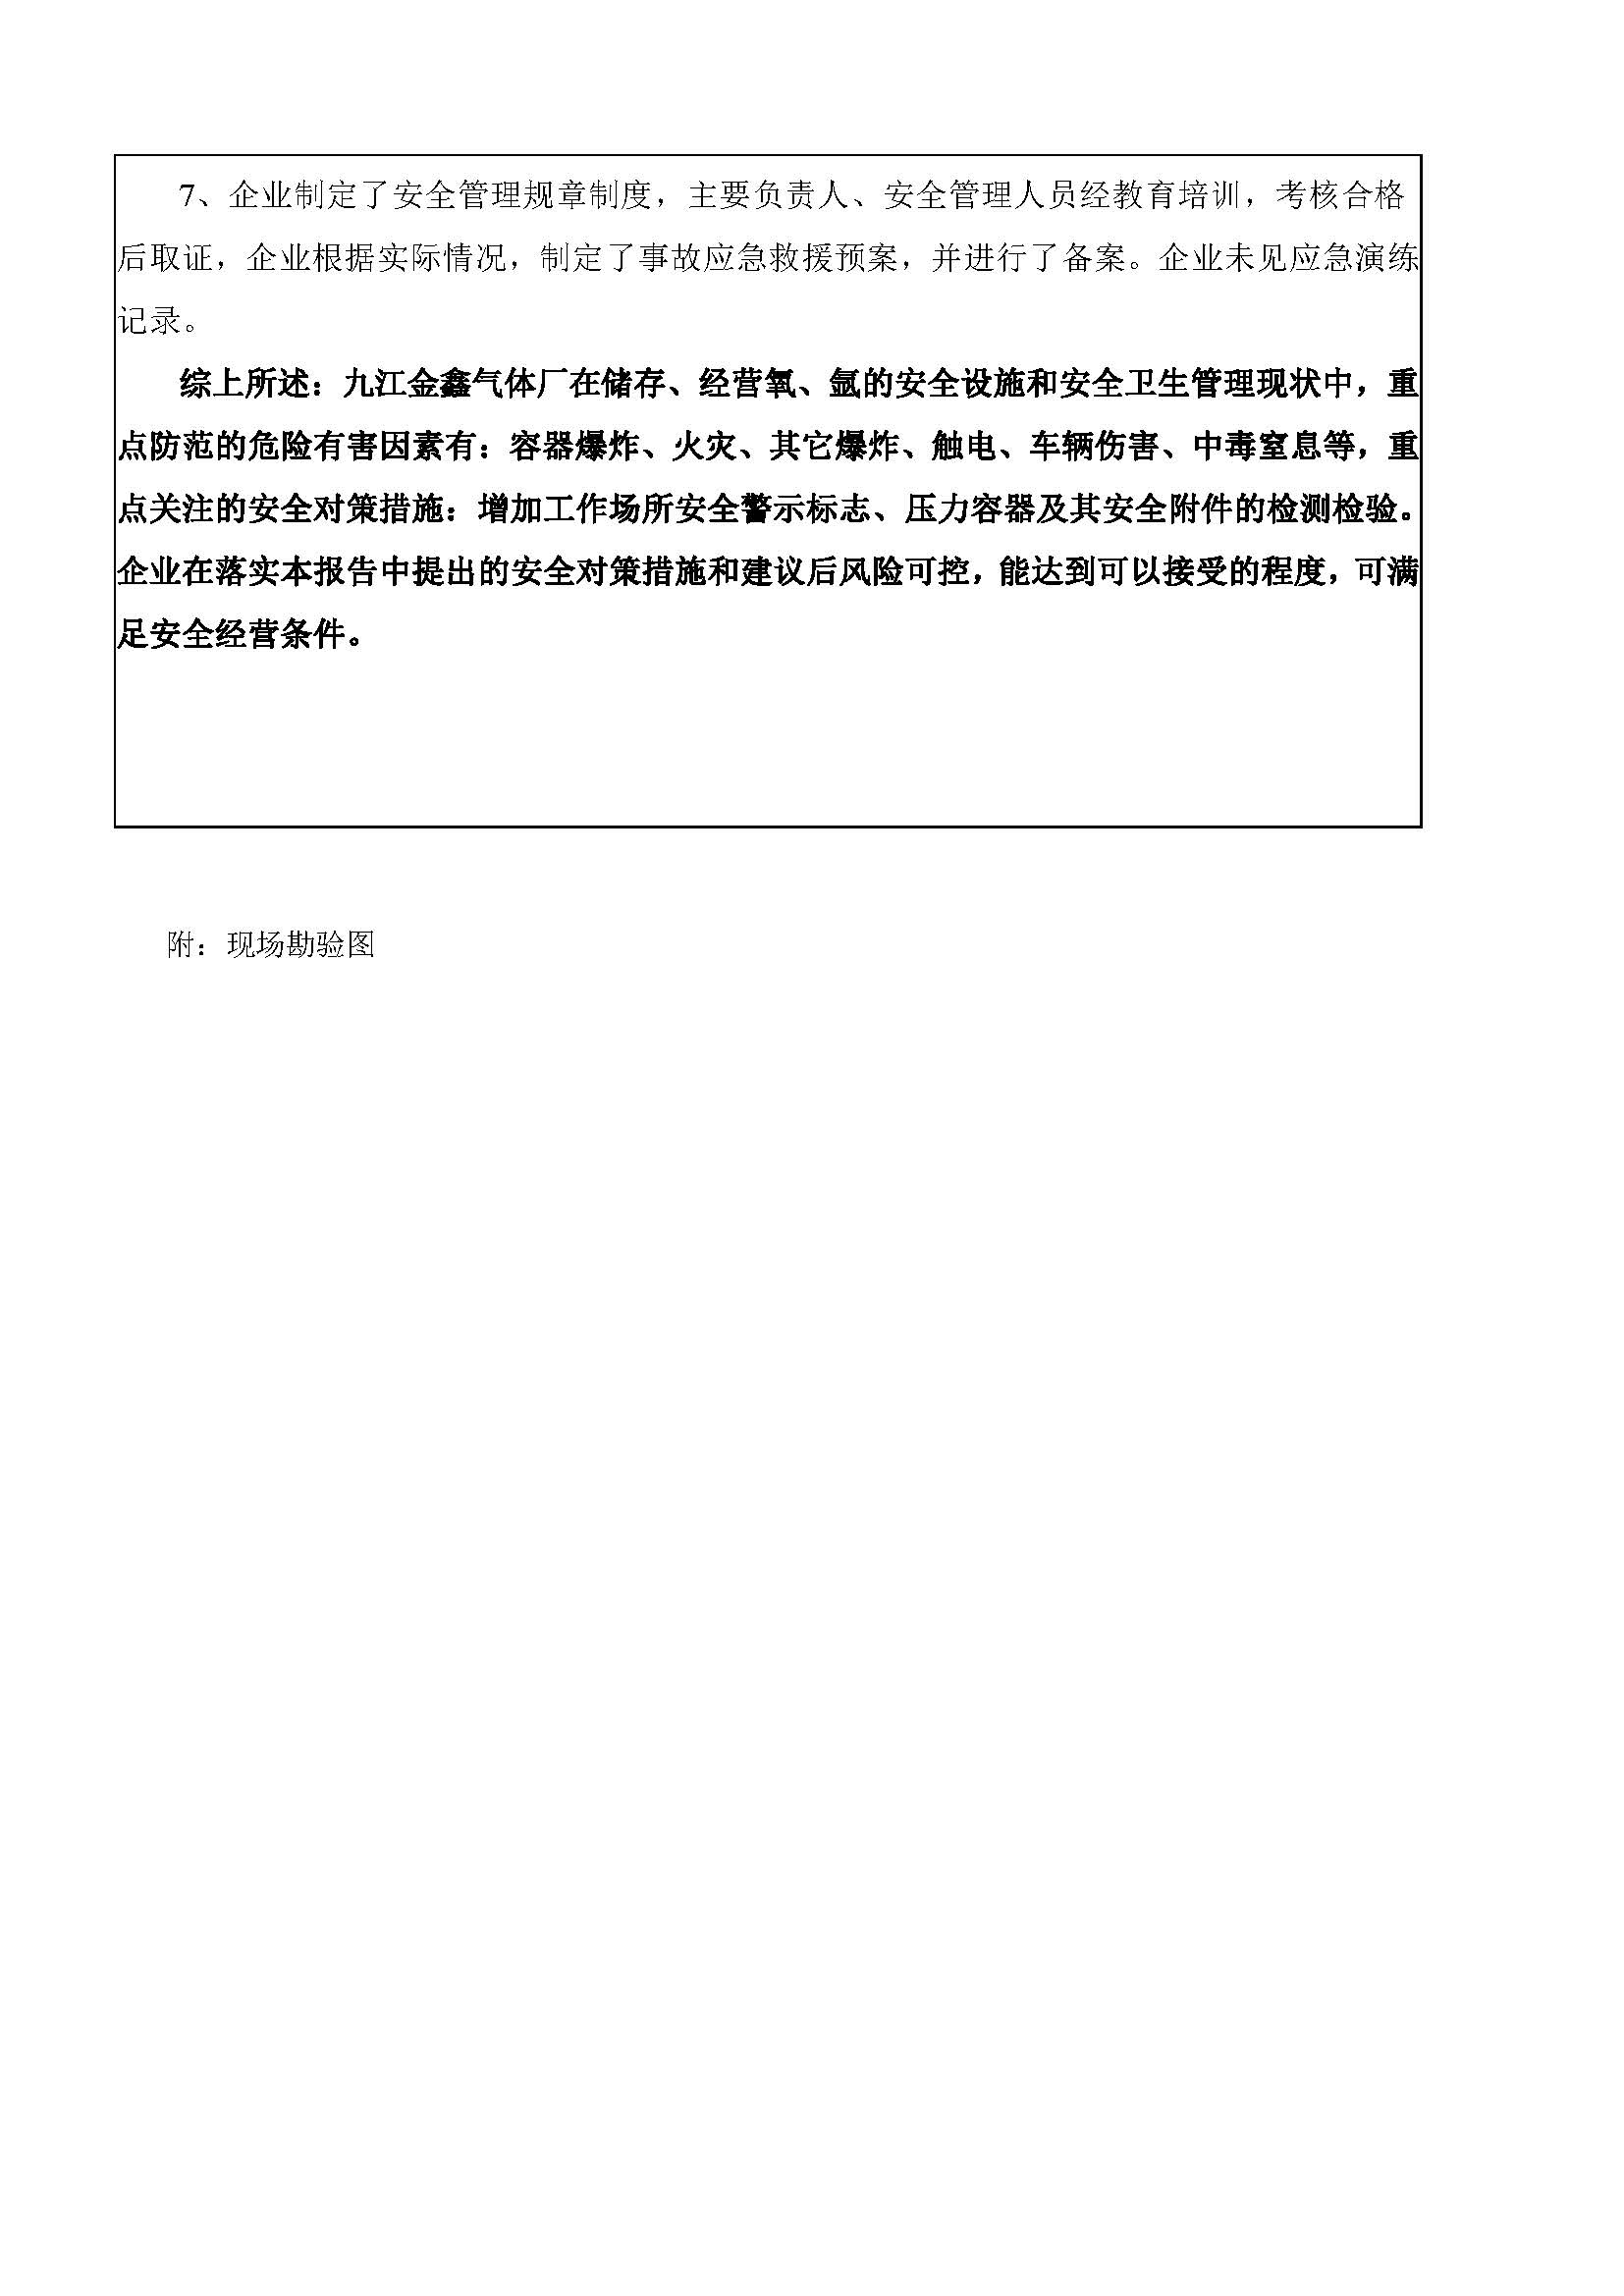 安全评价报告基本信息公开表（九江县金鑫气体厂）